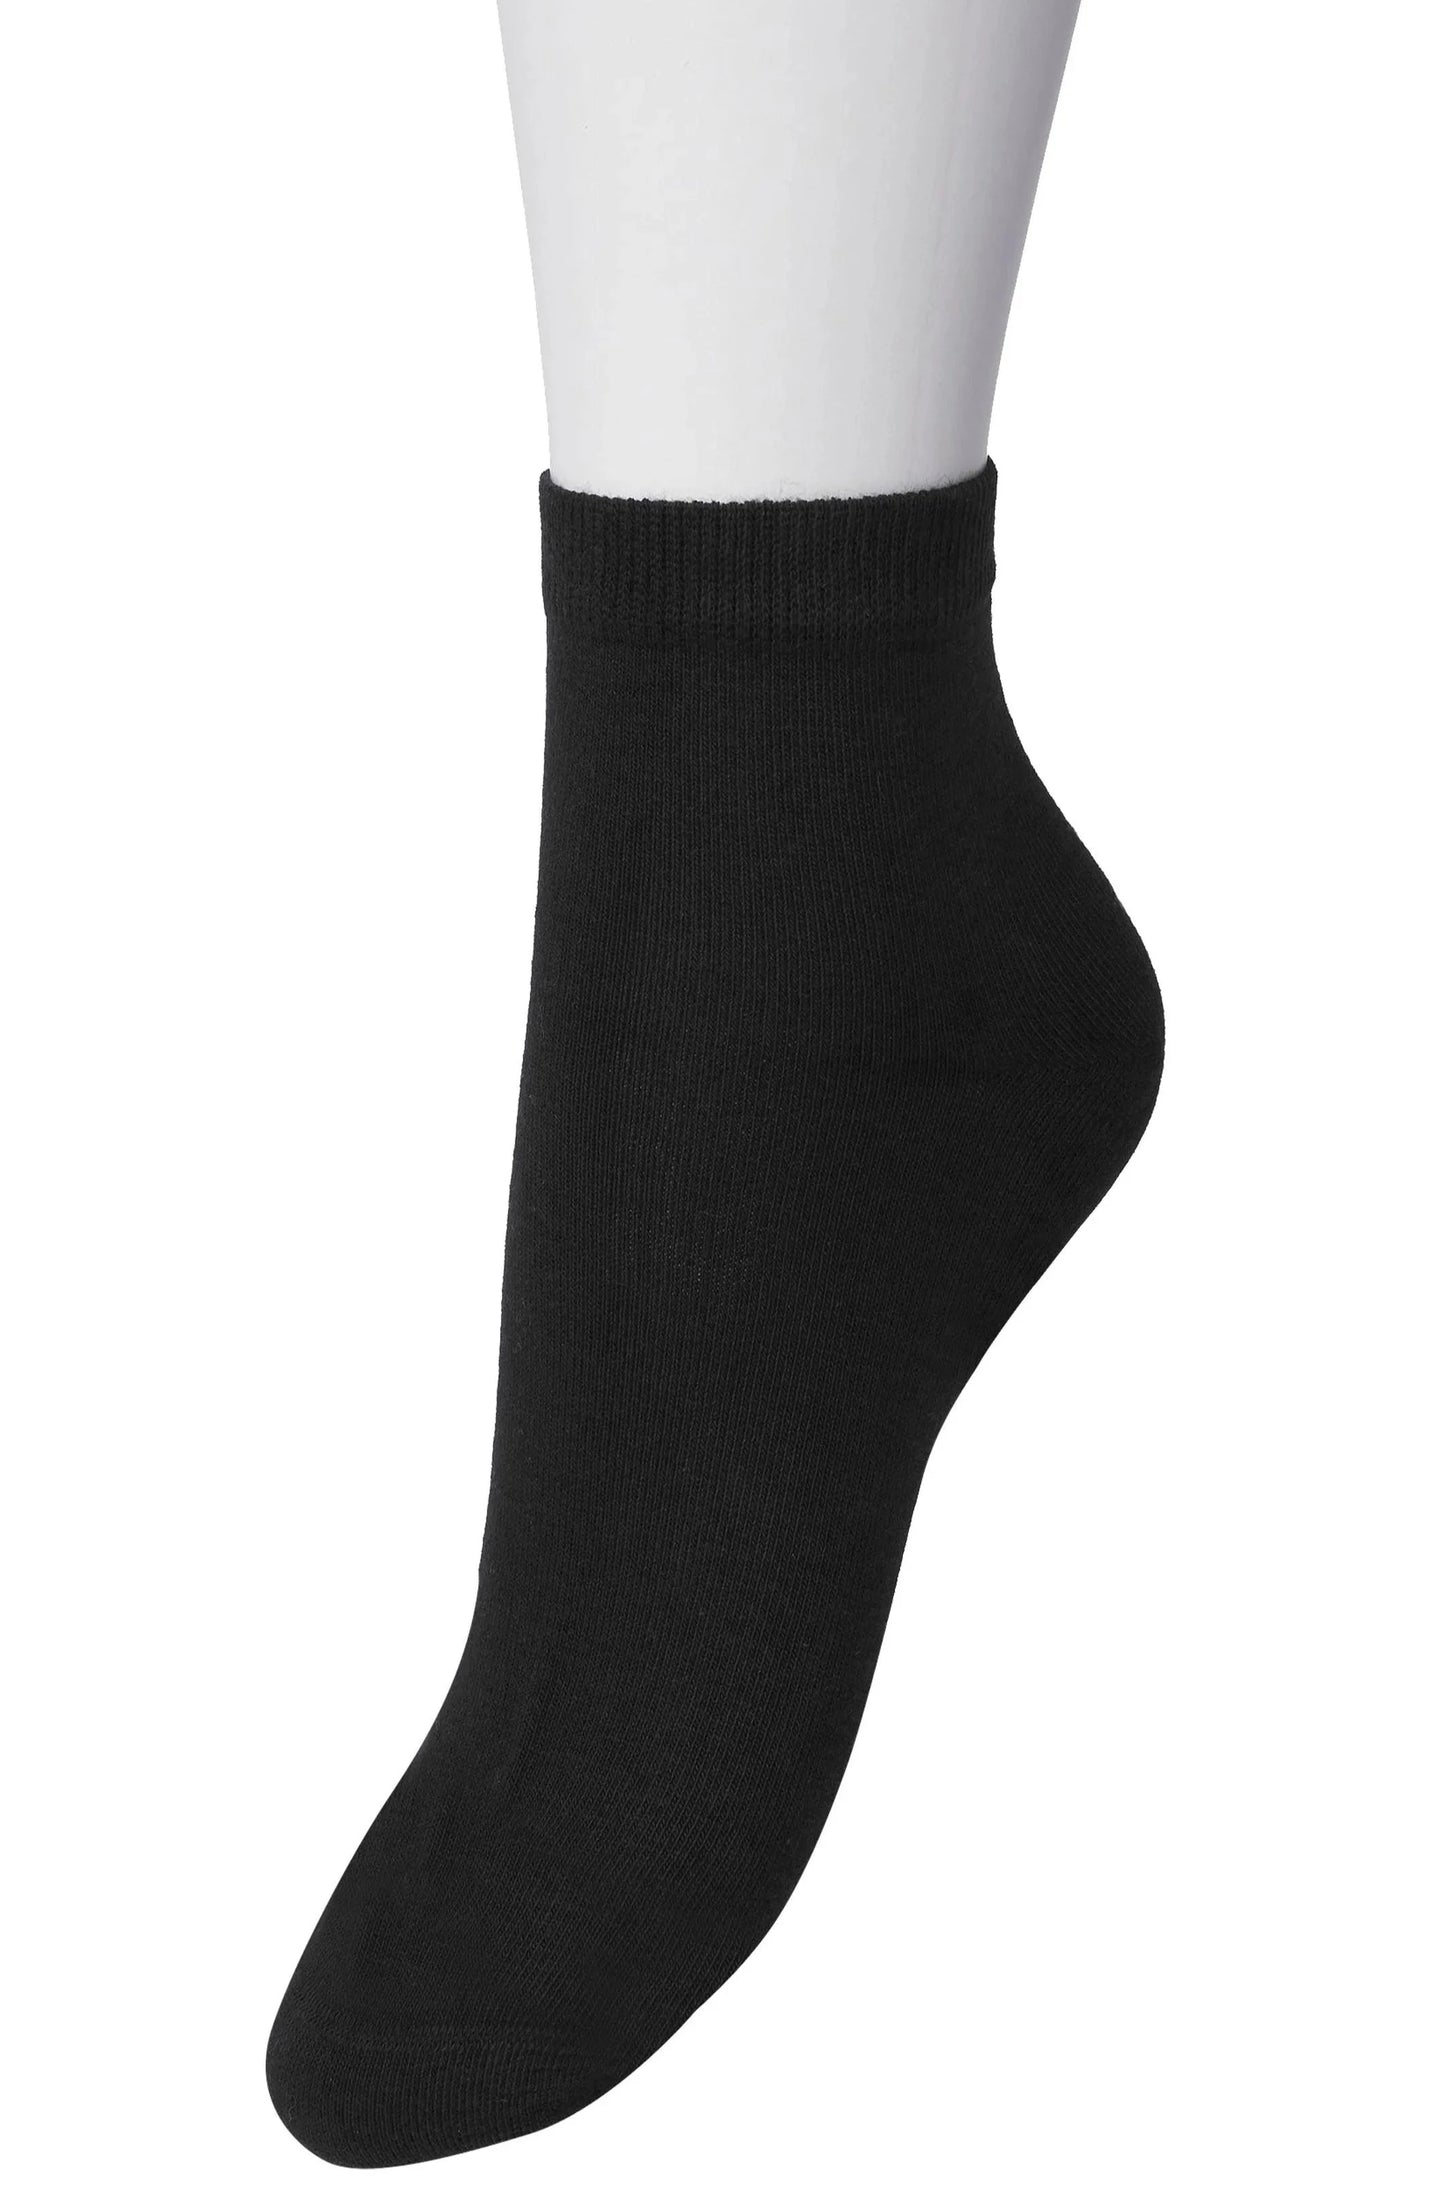 Bonnie Doon Basic Cotton Quarter BN761100 - black low ankle sock